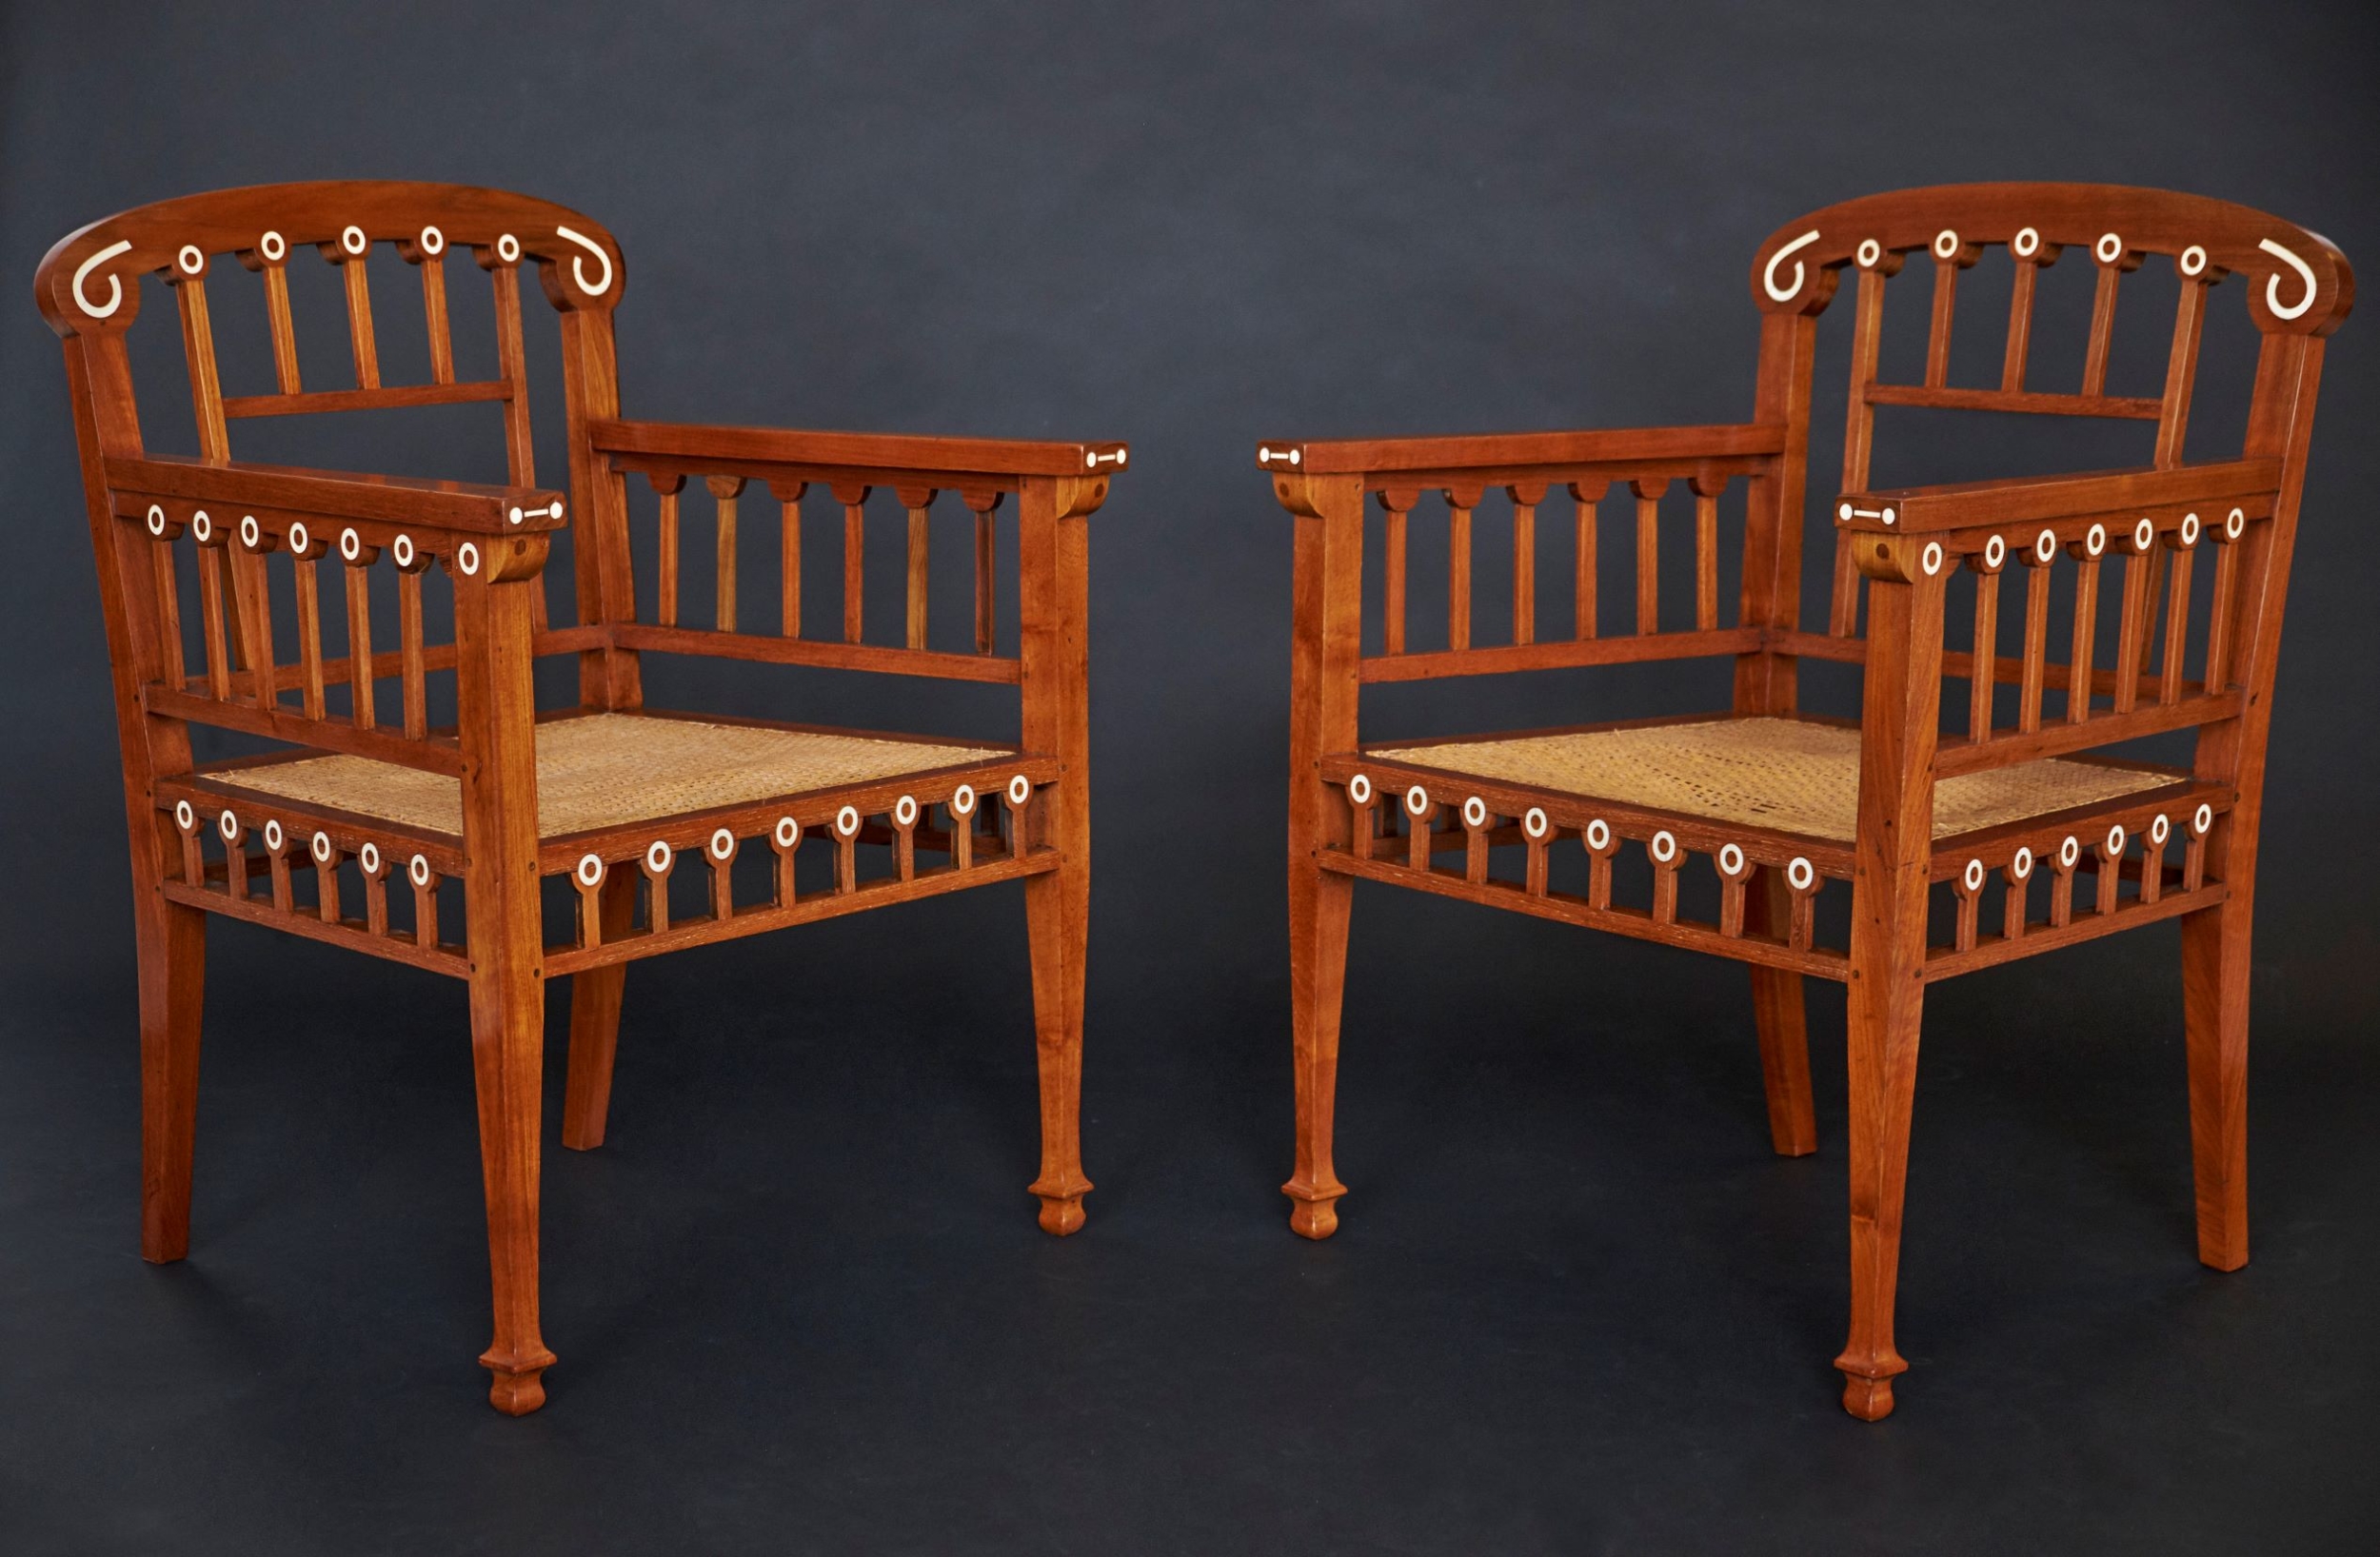 Chris Wegerif twee stoelen van Teakhout met inlegwerk van been circa 1903 scaled - De Haagse Salon voorjaarsexpositie 2022!